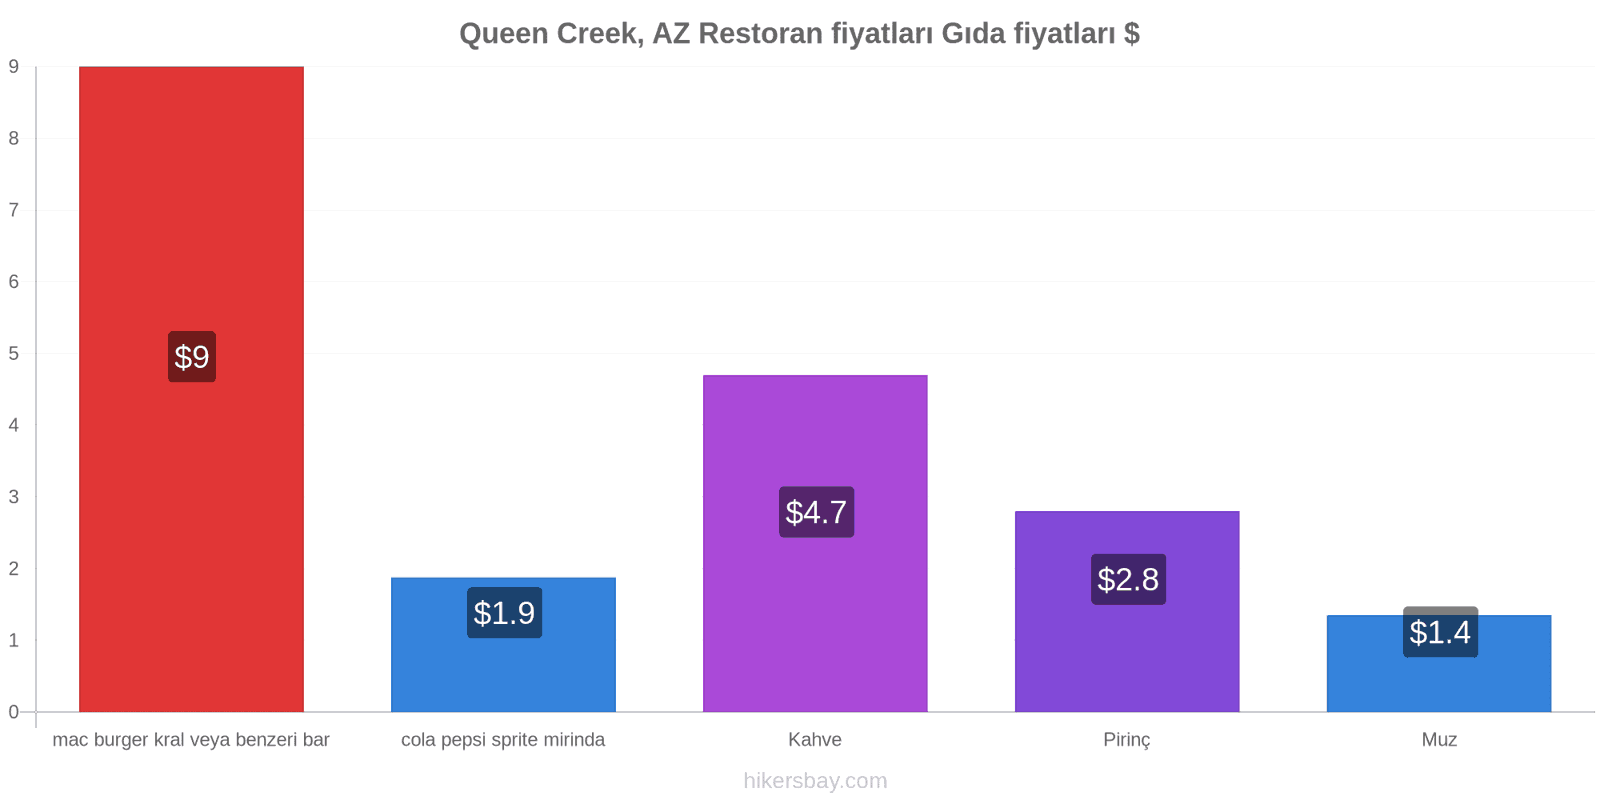 Queen Creek, AZ fiyat değişiklikleri hikersbay.com